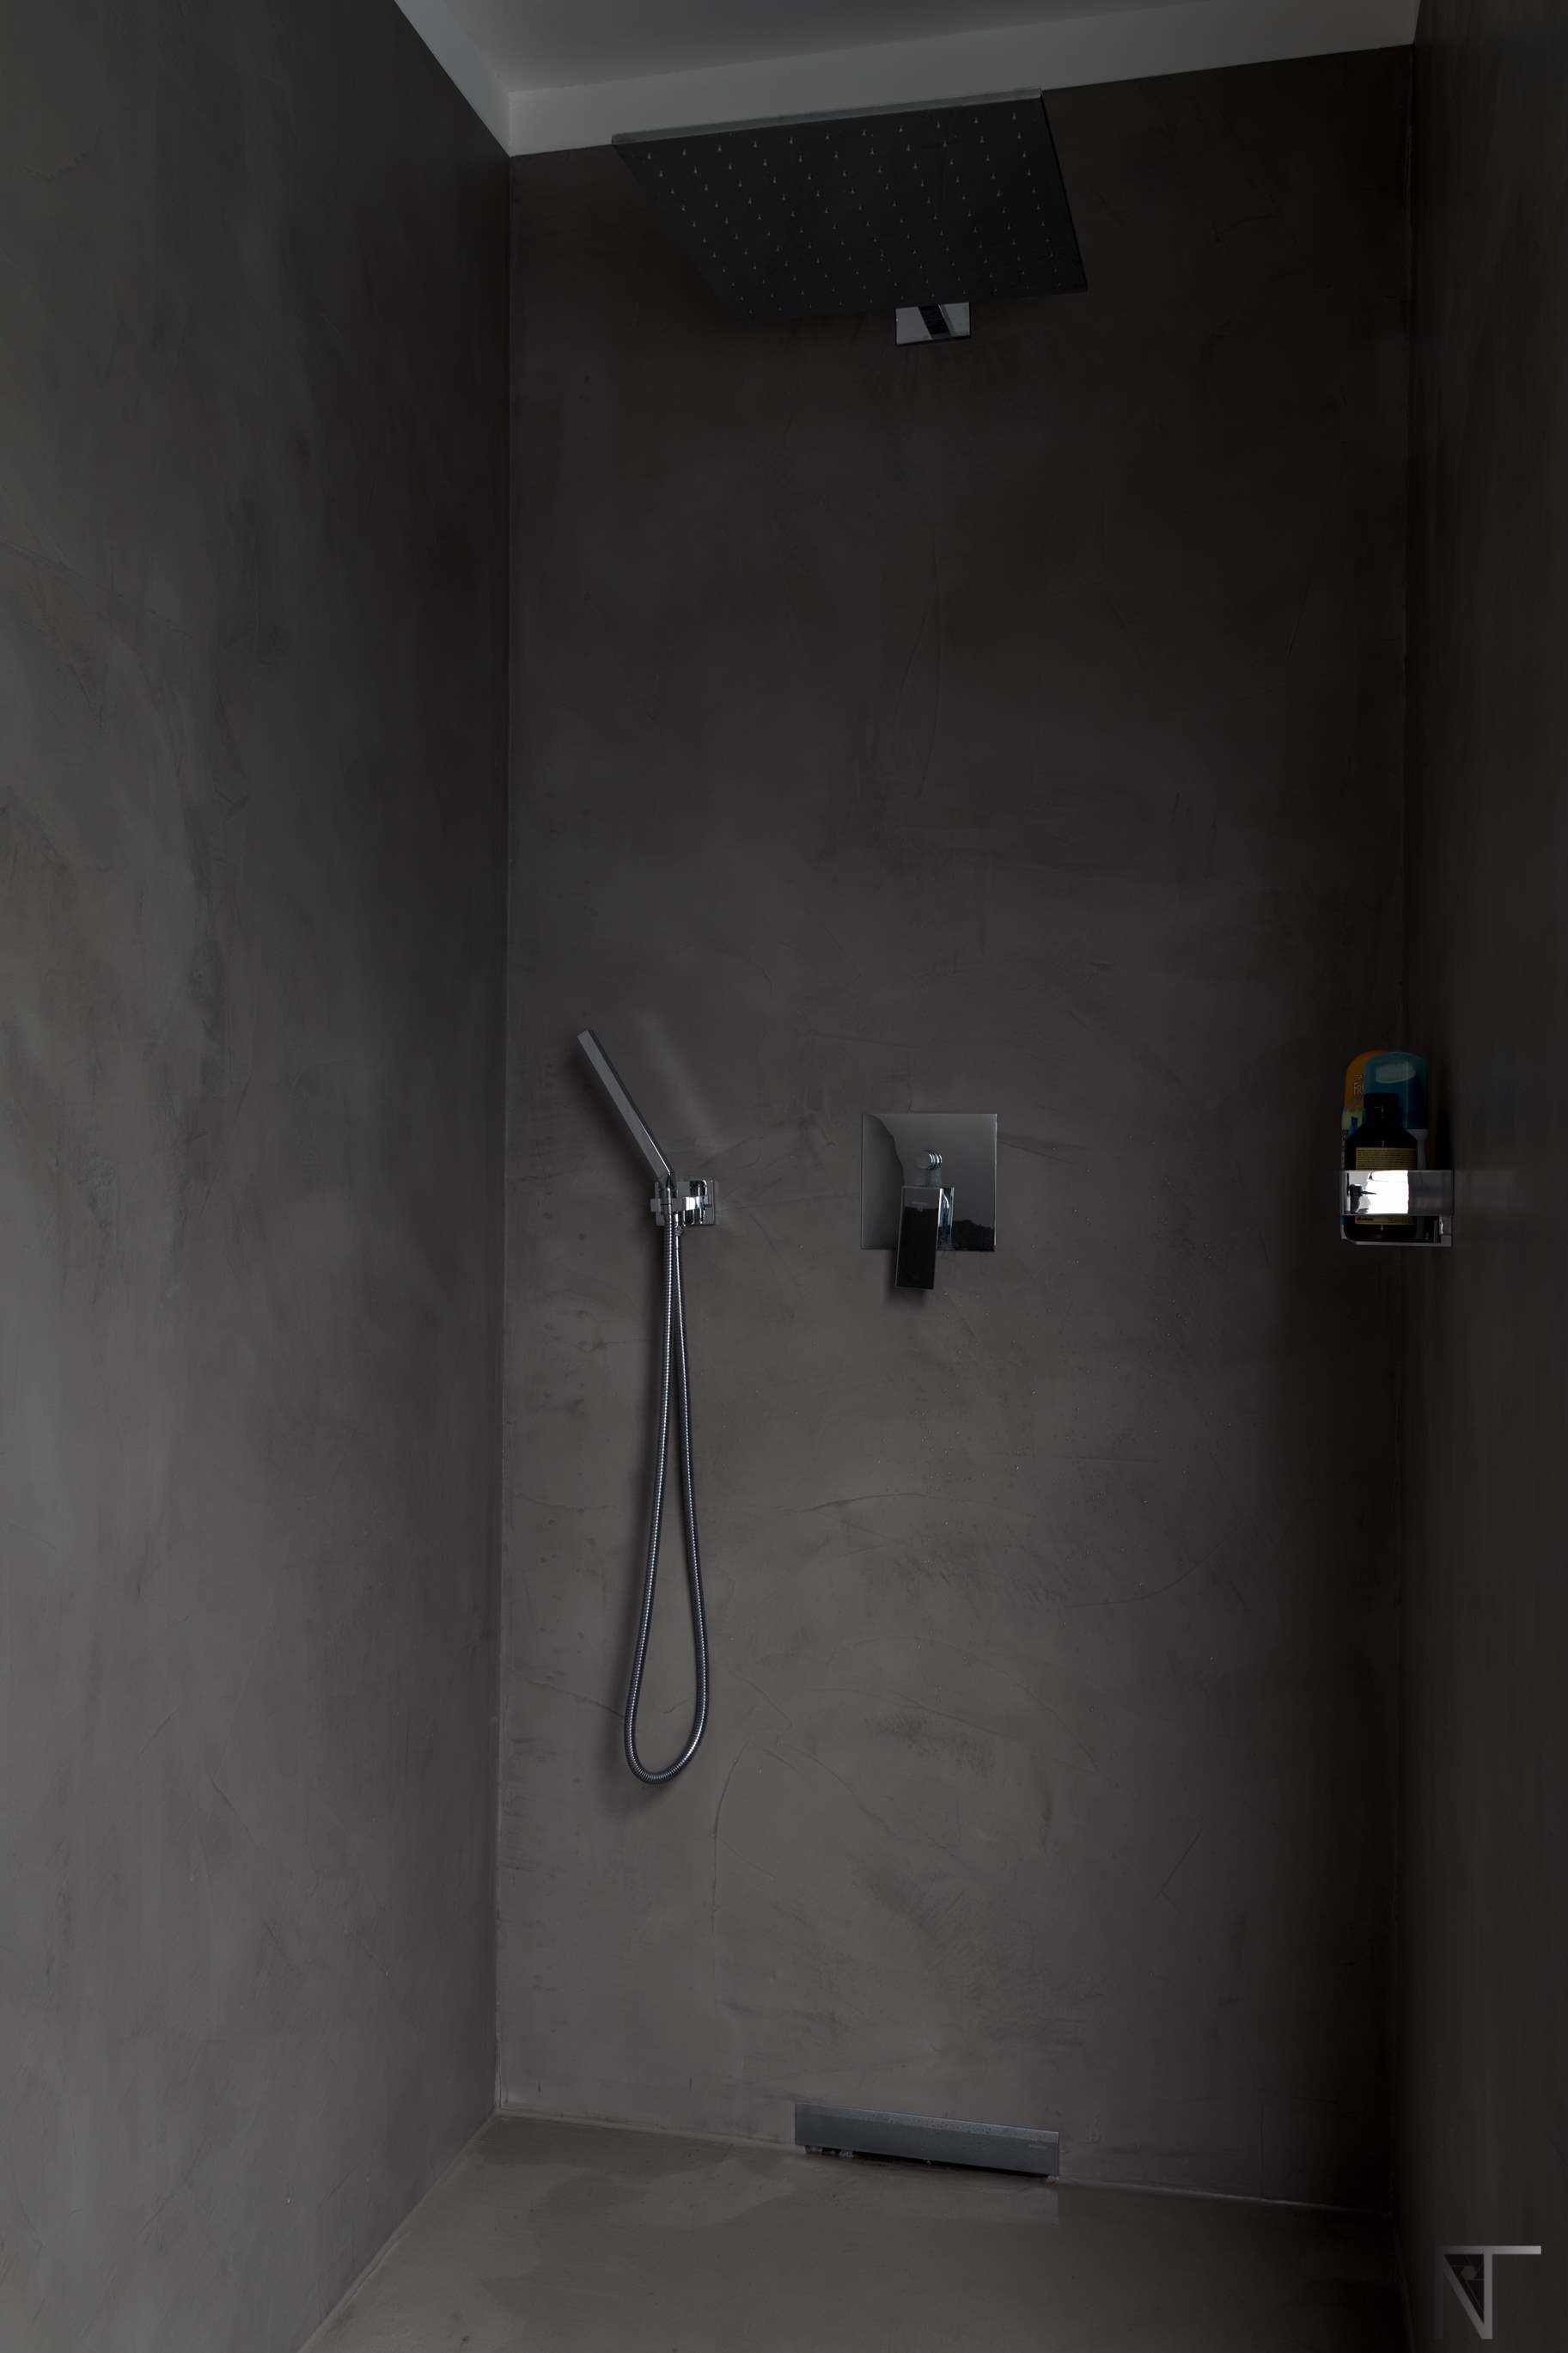 Salle de bains carrelée rénovée avec du béton ciré dans la douche